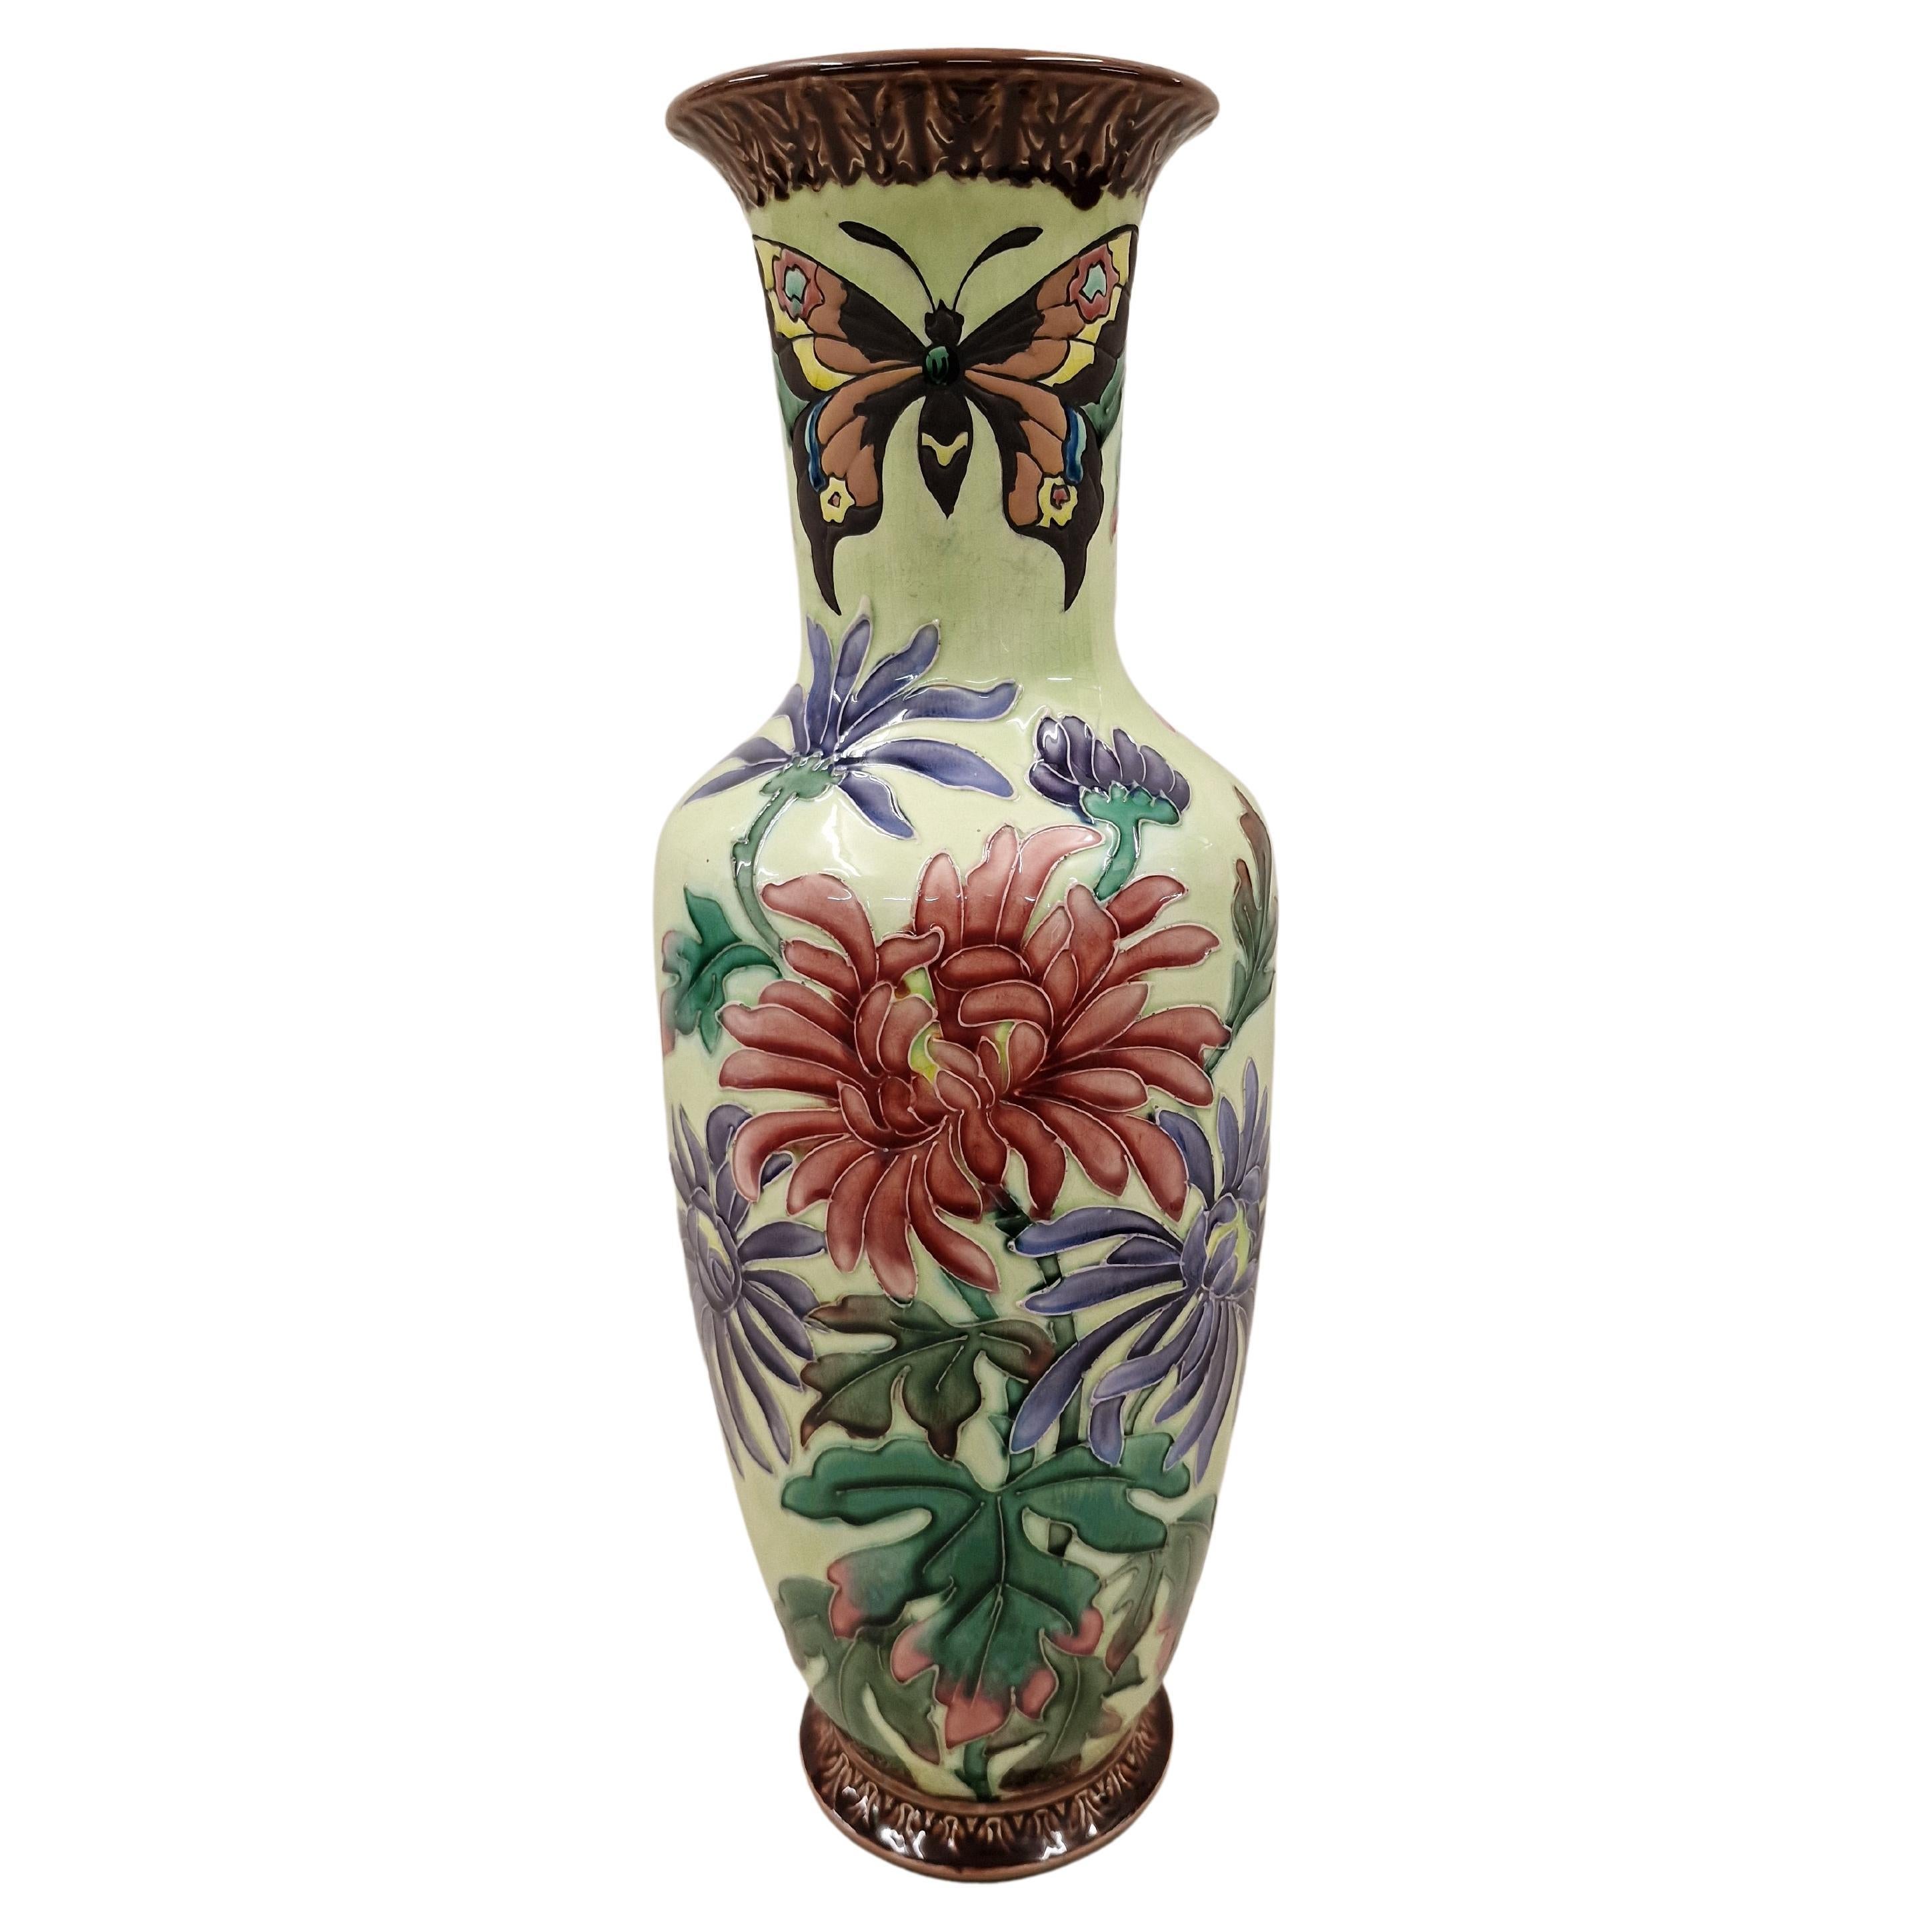 Grand vase à fleurs décoré de papillons, céramique, 1910, Jugendstil/Art Nouveau, France